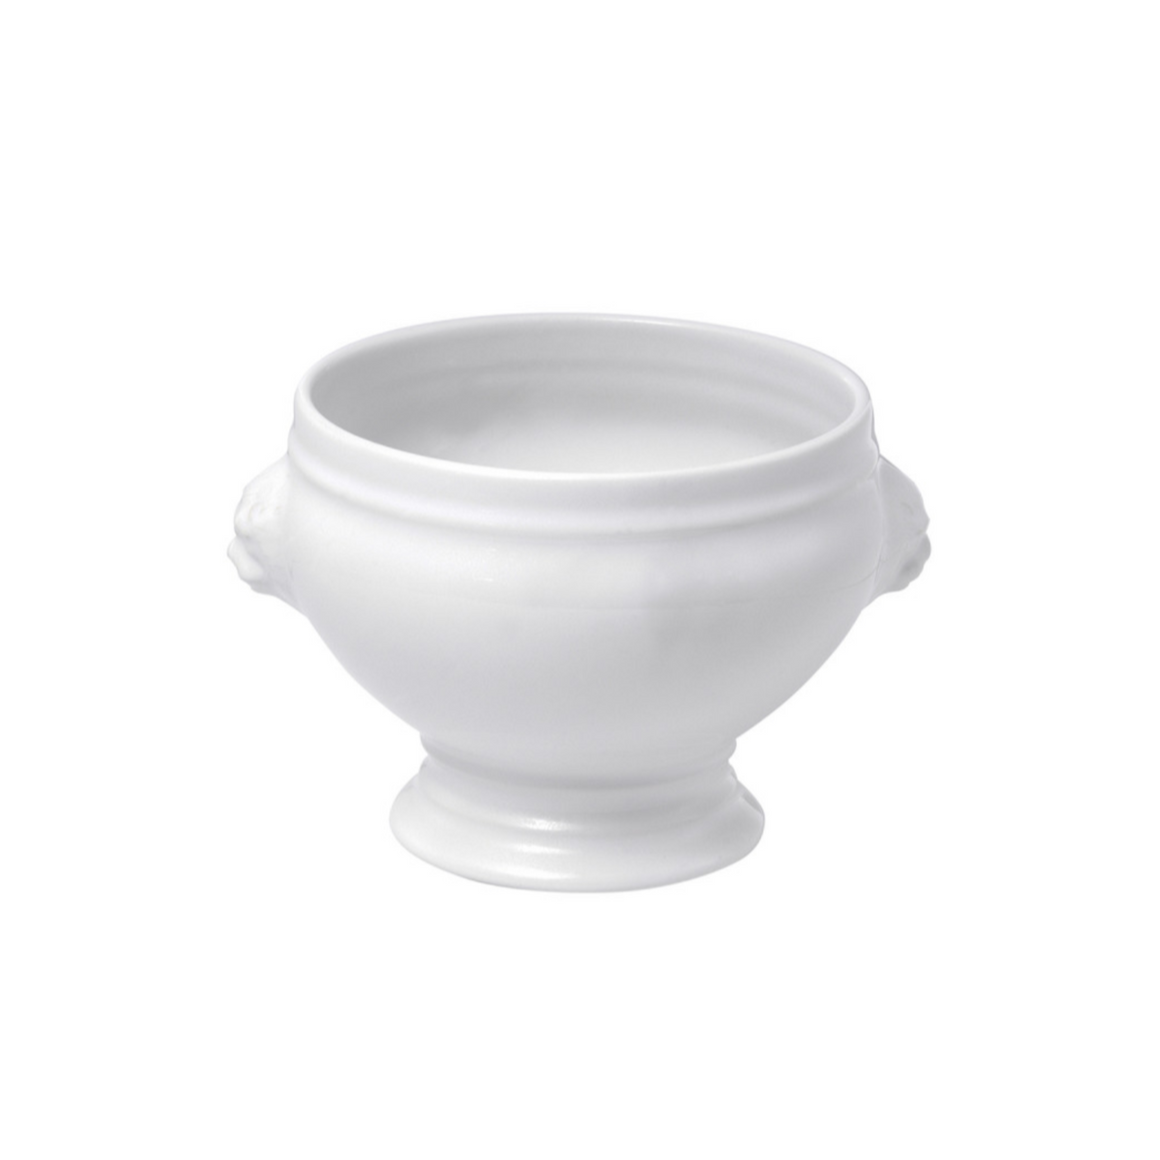 Apilco Lion's Head Porcelain Soup Bowl